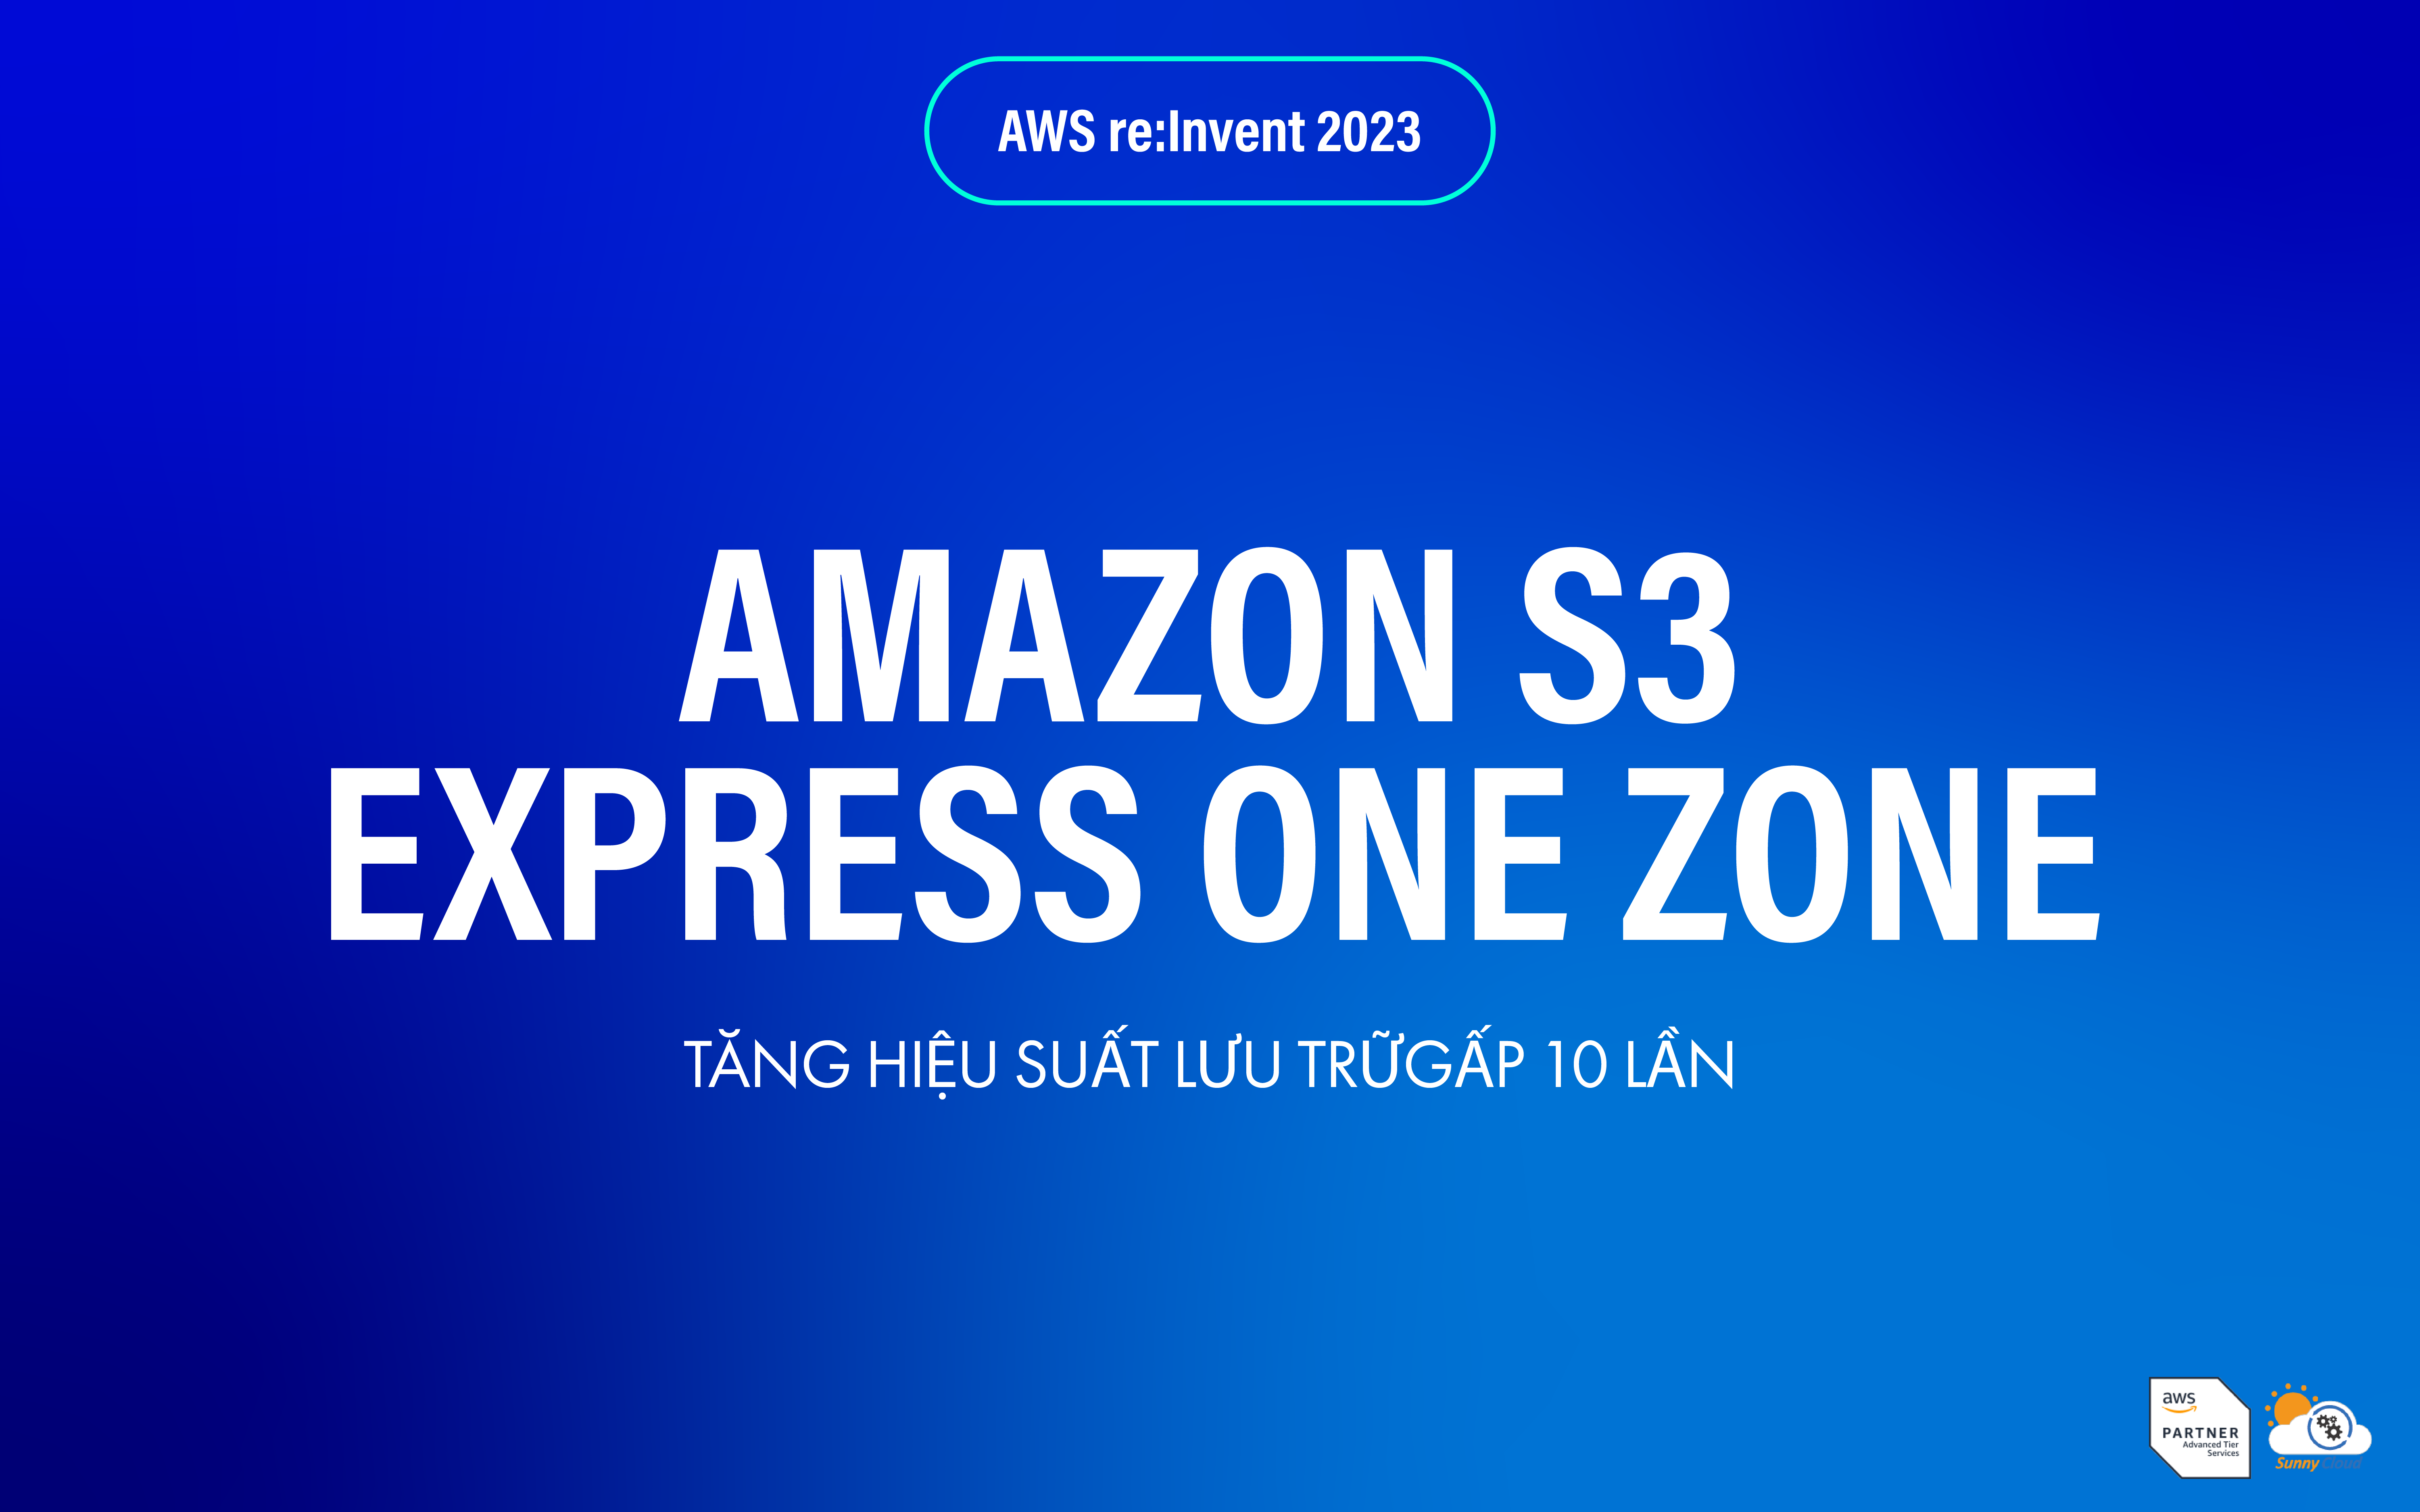 Tăng hiệu suất lưu trữ gấp 10 lần với Amazon S3 Express One Zone